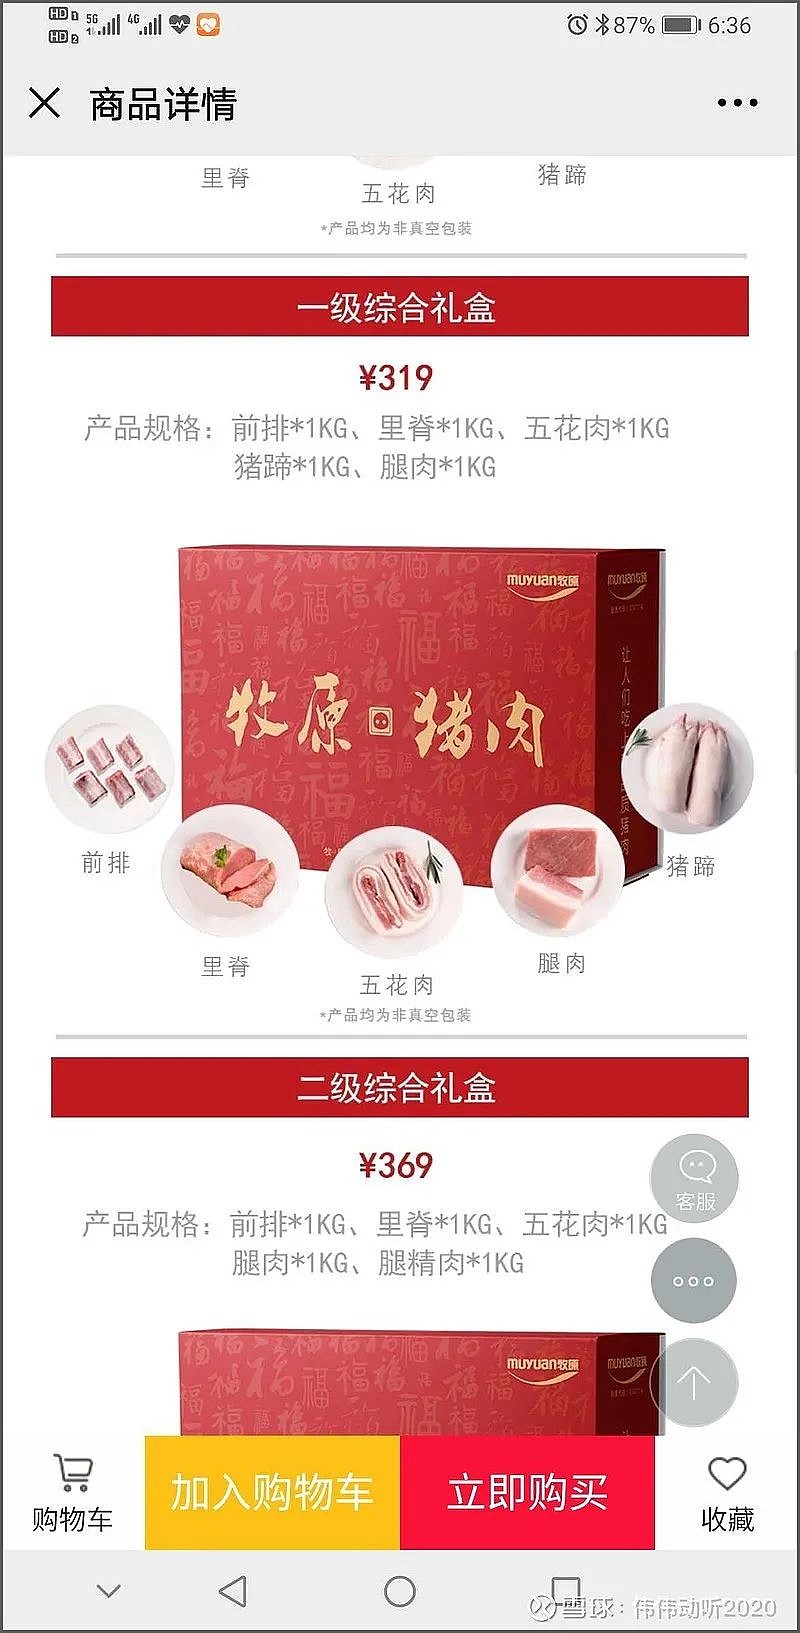 网页链接):图片中的信息显示,牧原猪肉一级综合礼盒的售价为369元